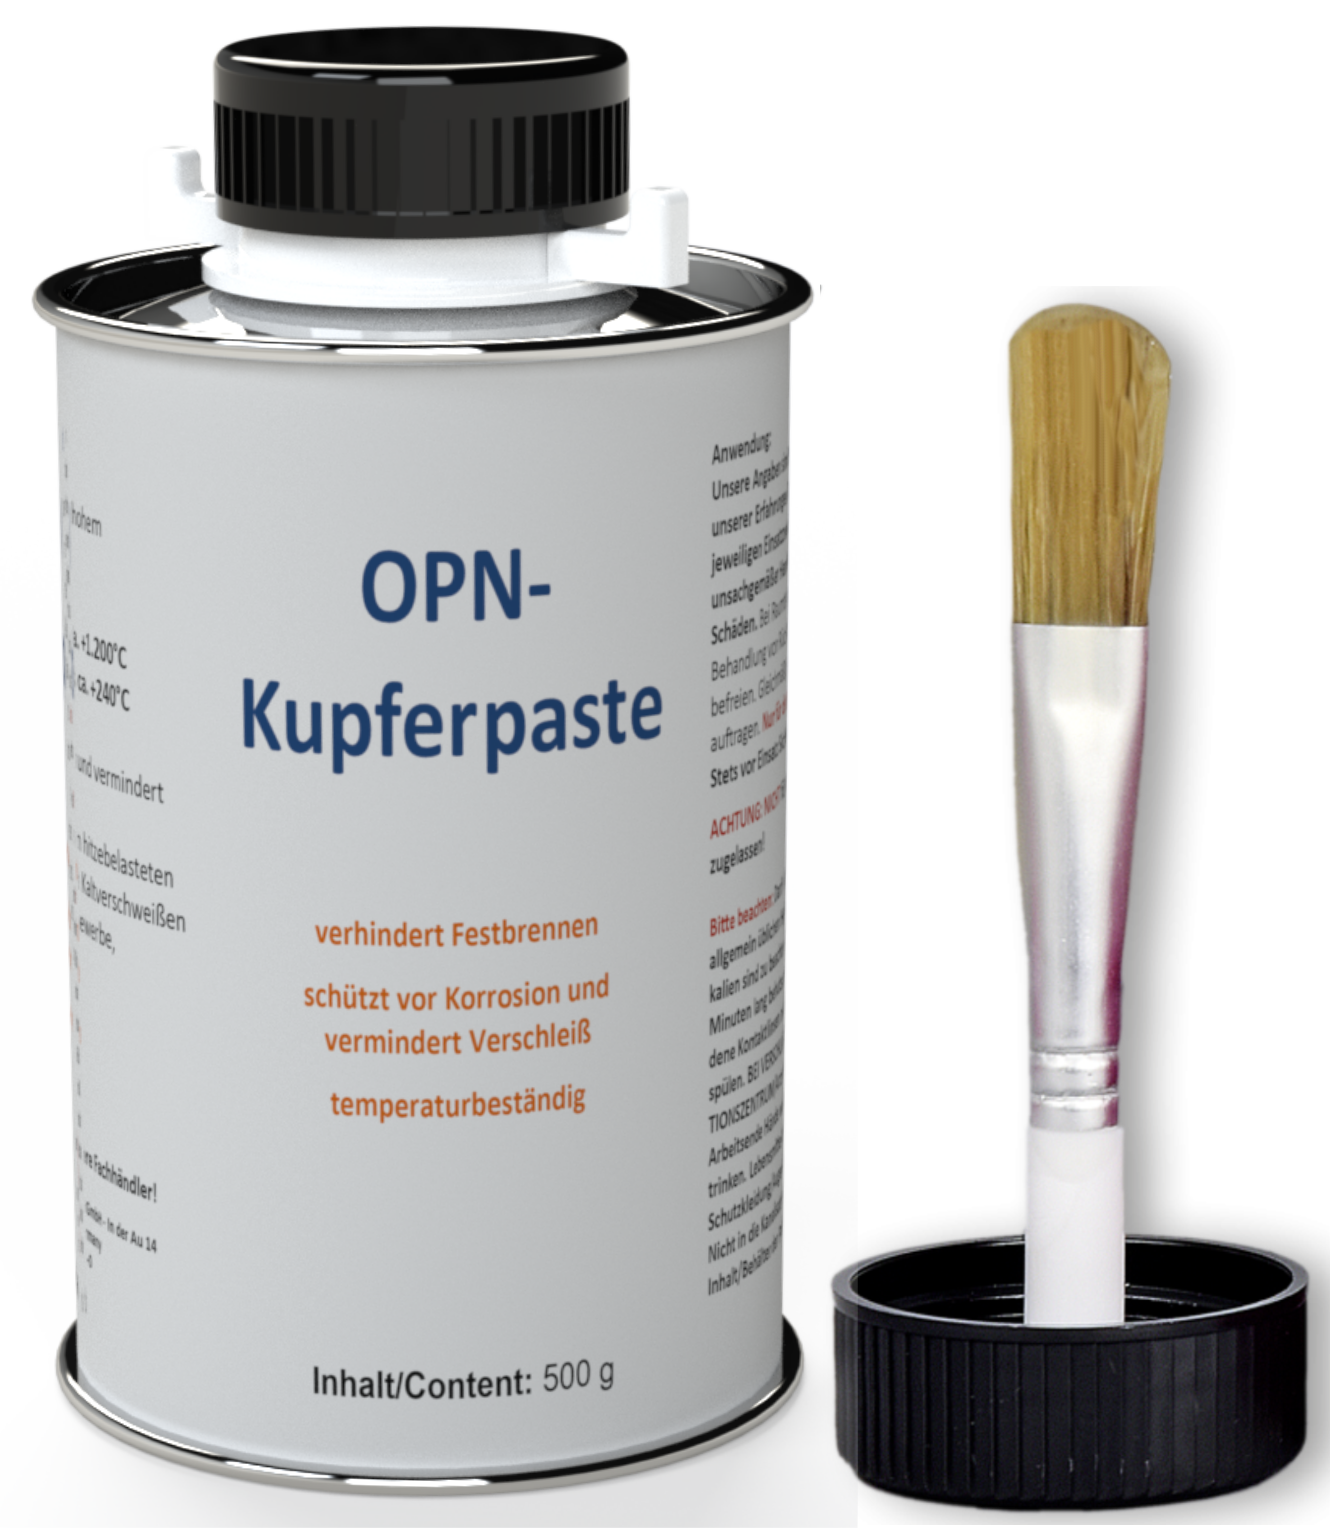 OPN-Kupferpaste  OPN-CHEMIE GmbH